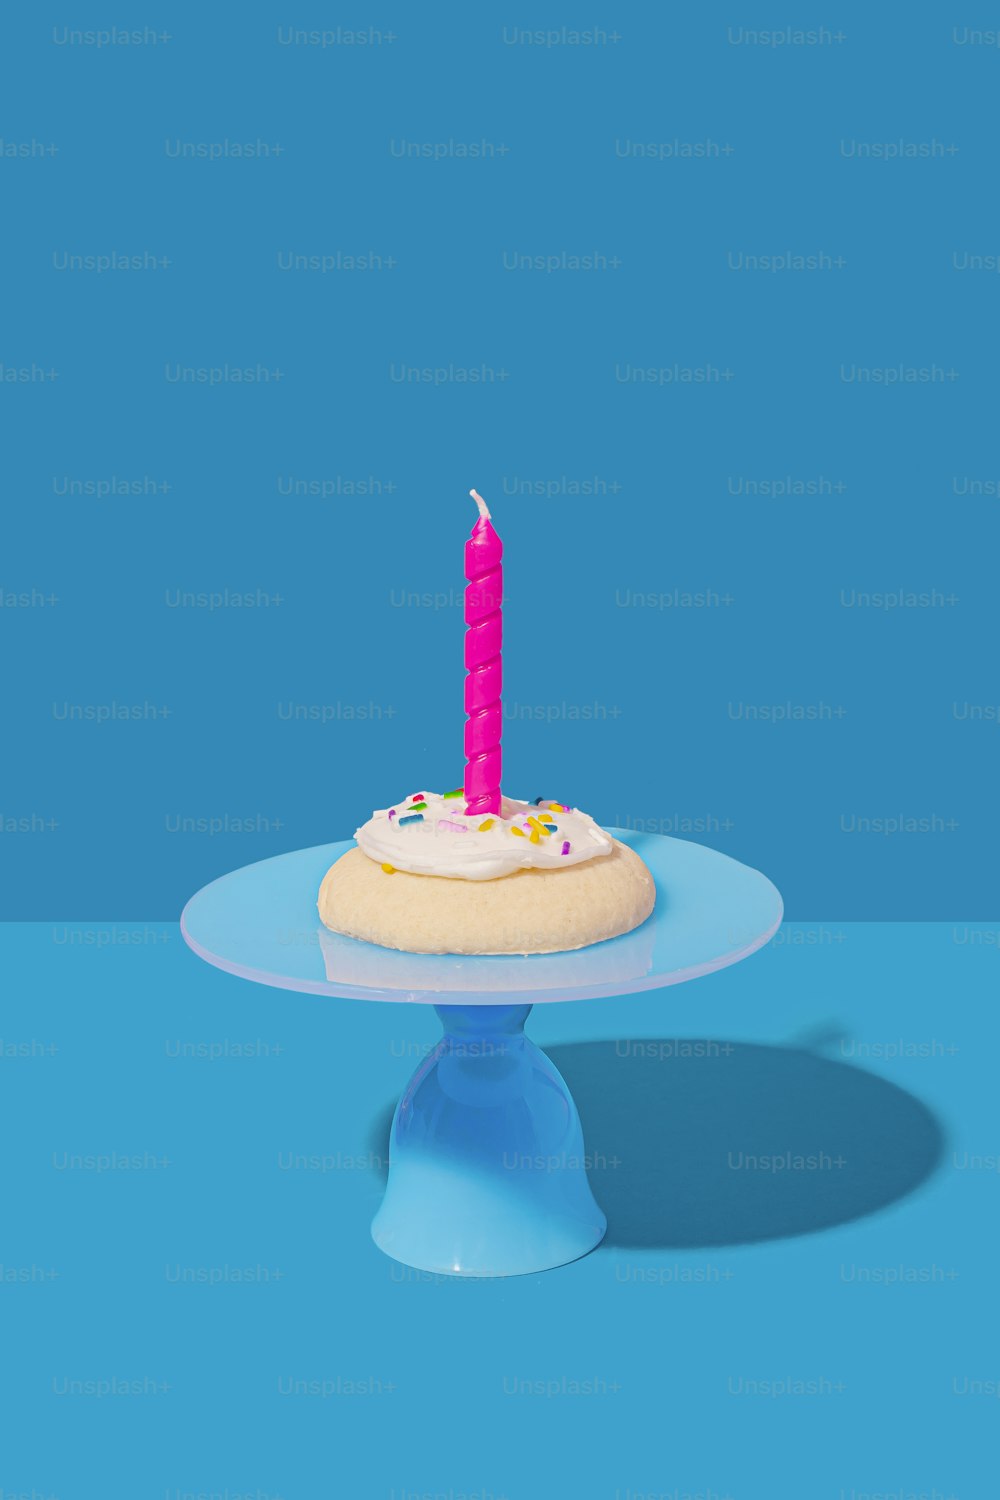 Un pastel de cumpleaños con una sola vela encima